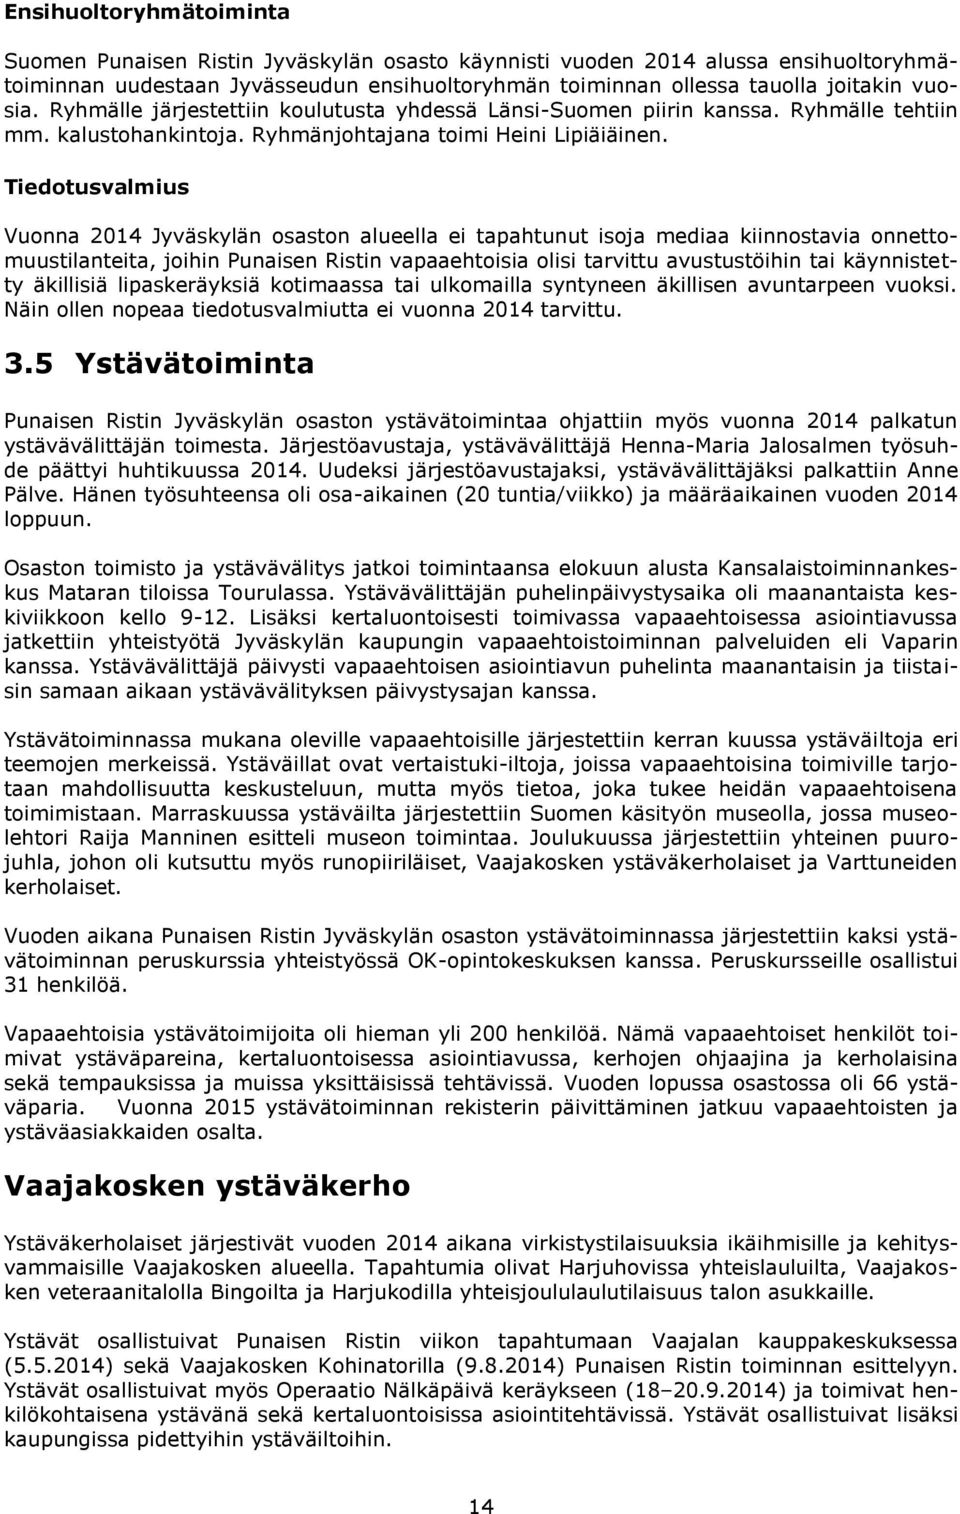 Tiedotusvalmius Vuonna 2014 Jyväskylän osaston alueella ei tapahtunut isoja mediaa kiinnostavia onnettomuustilanteita, joihin Punaisen Ristin vapaaehtoisia olisi tarvittu avustustöihin tai